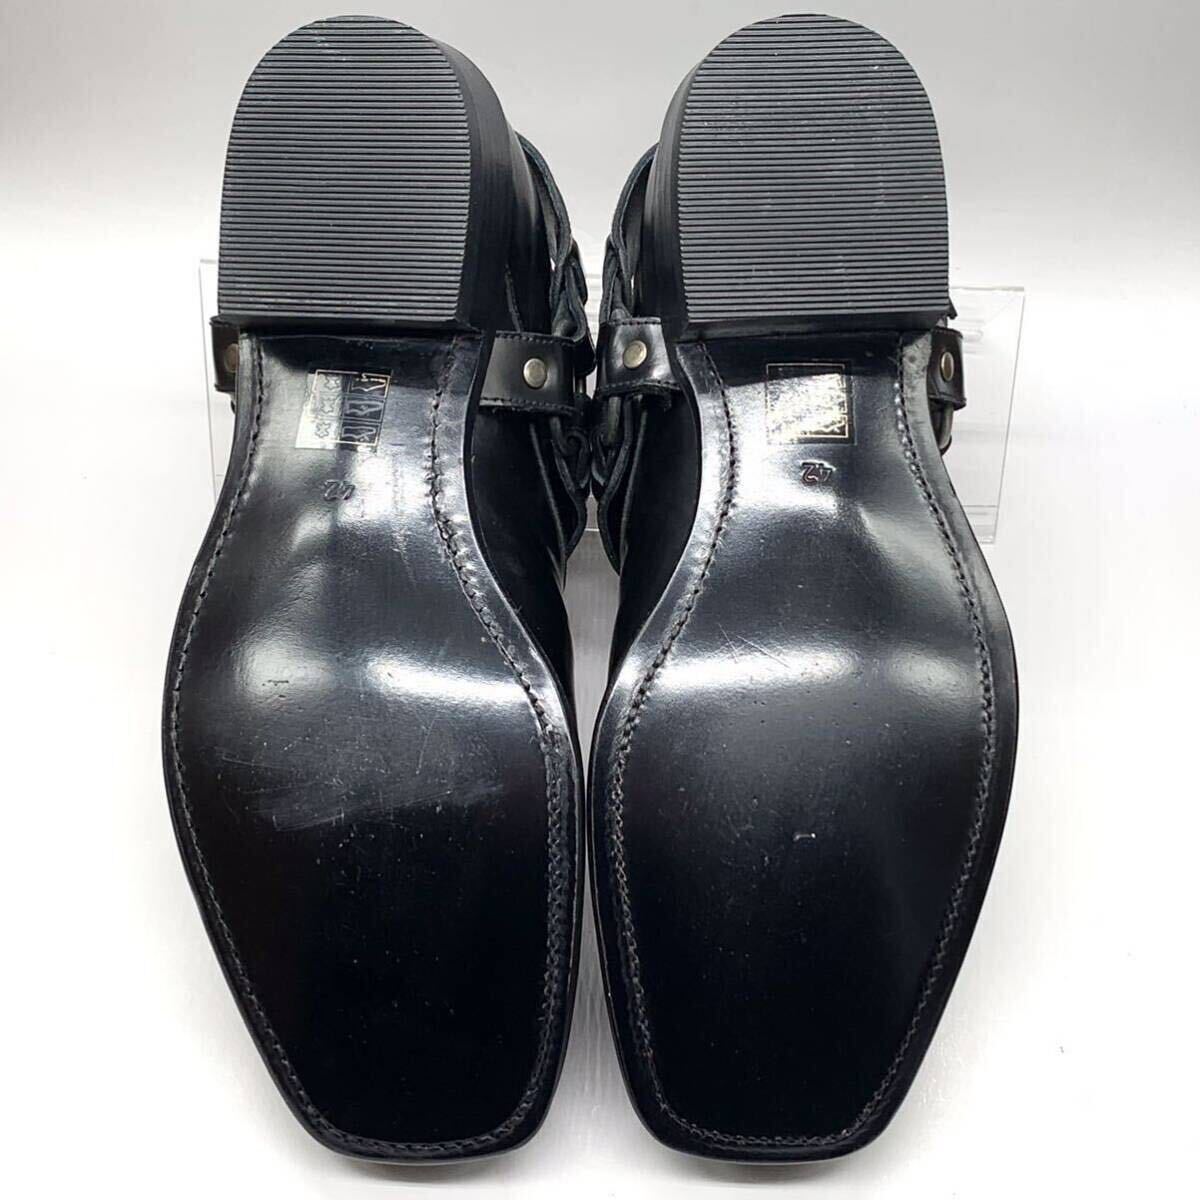 CLAVEL [クラベル] リングベルト ウエスタンシューズ 民族調 スクエアトゥ レザー ブラック 黒 42 27cm 革靴 スペイン製 メンズ 